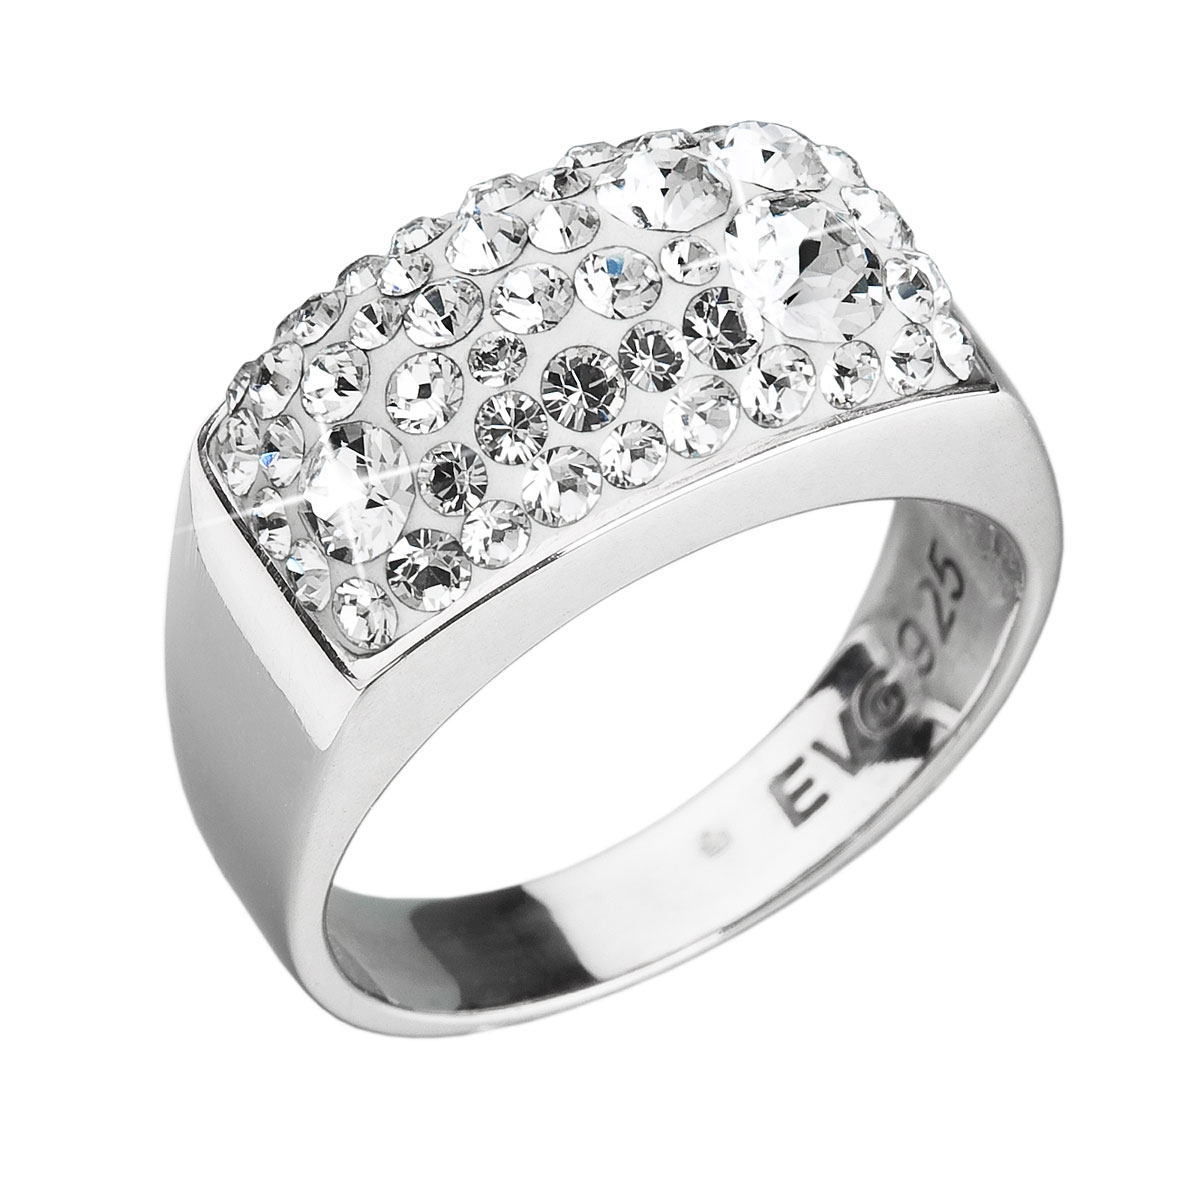 Strieborný prsteň s kryštálmi Swarovski Crystal